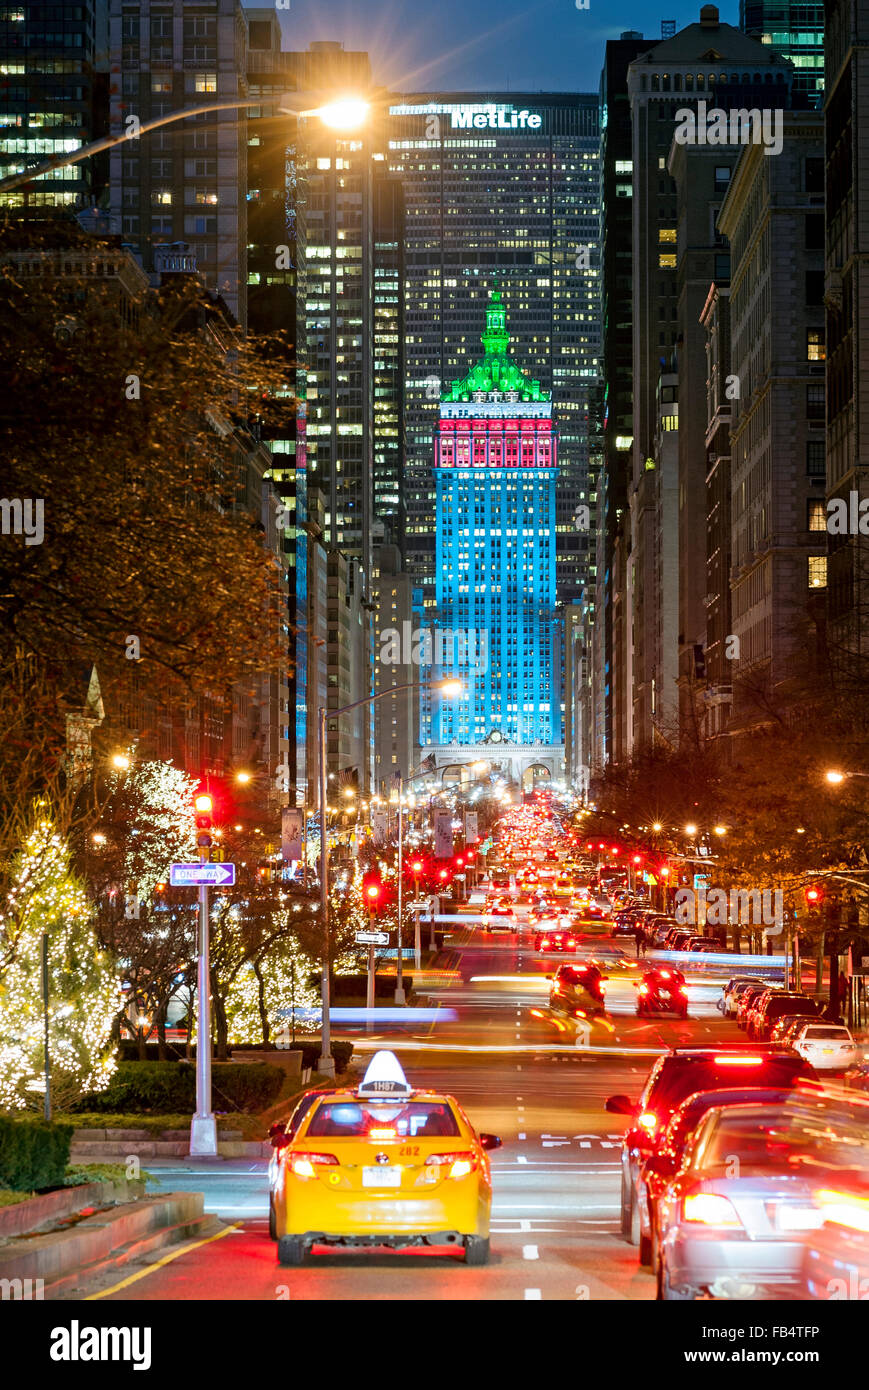 Decorazioni Natale New York.New York Natale New York Street Park Avenue E Decorazioni Di New York City Di Alberi Di Natale Il Traffico Foto Stock Alamy